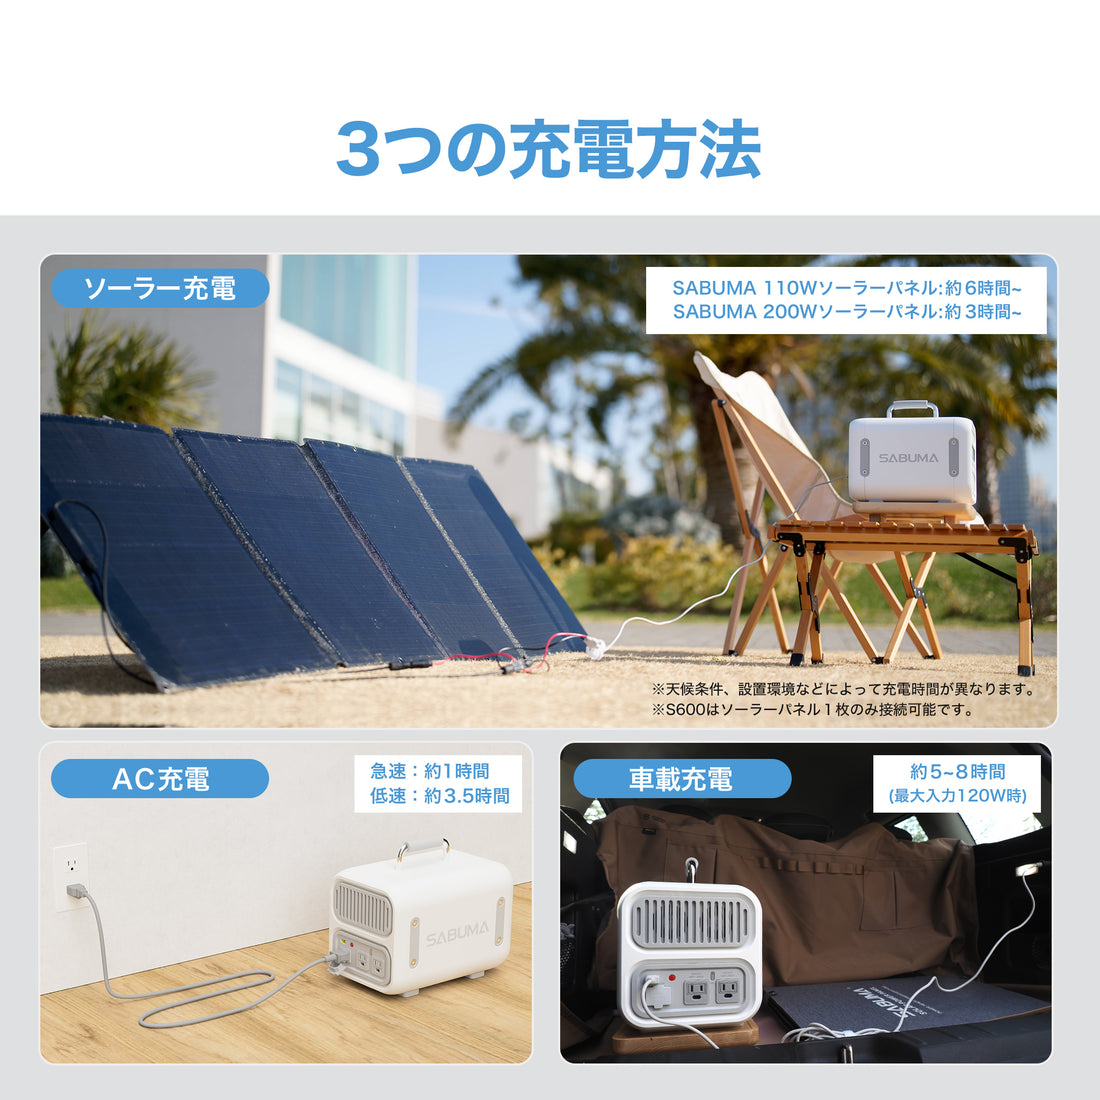 【予約商品】SABUMA ポータブル電源 S600